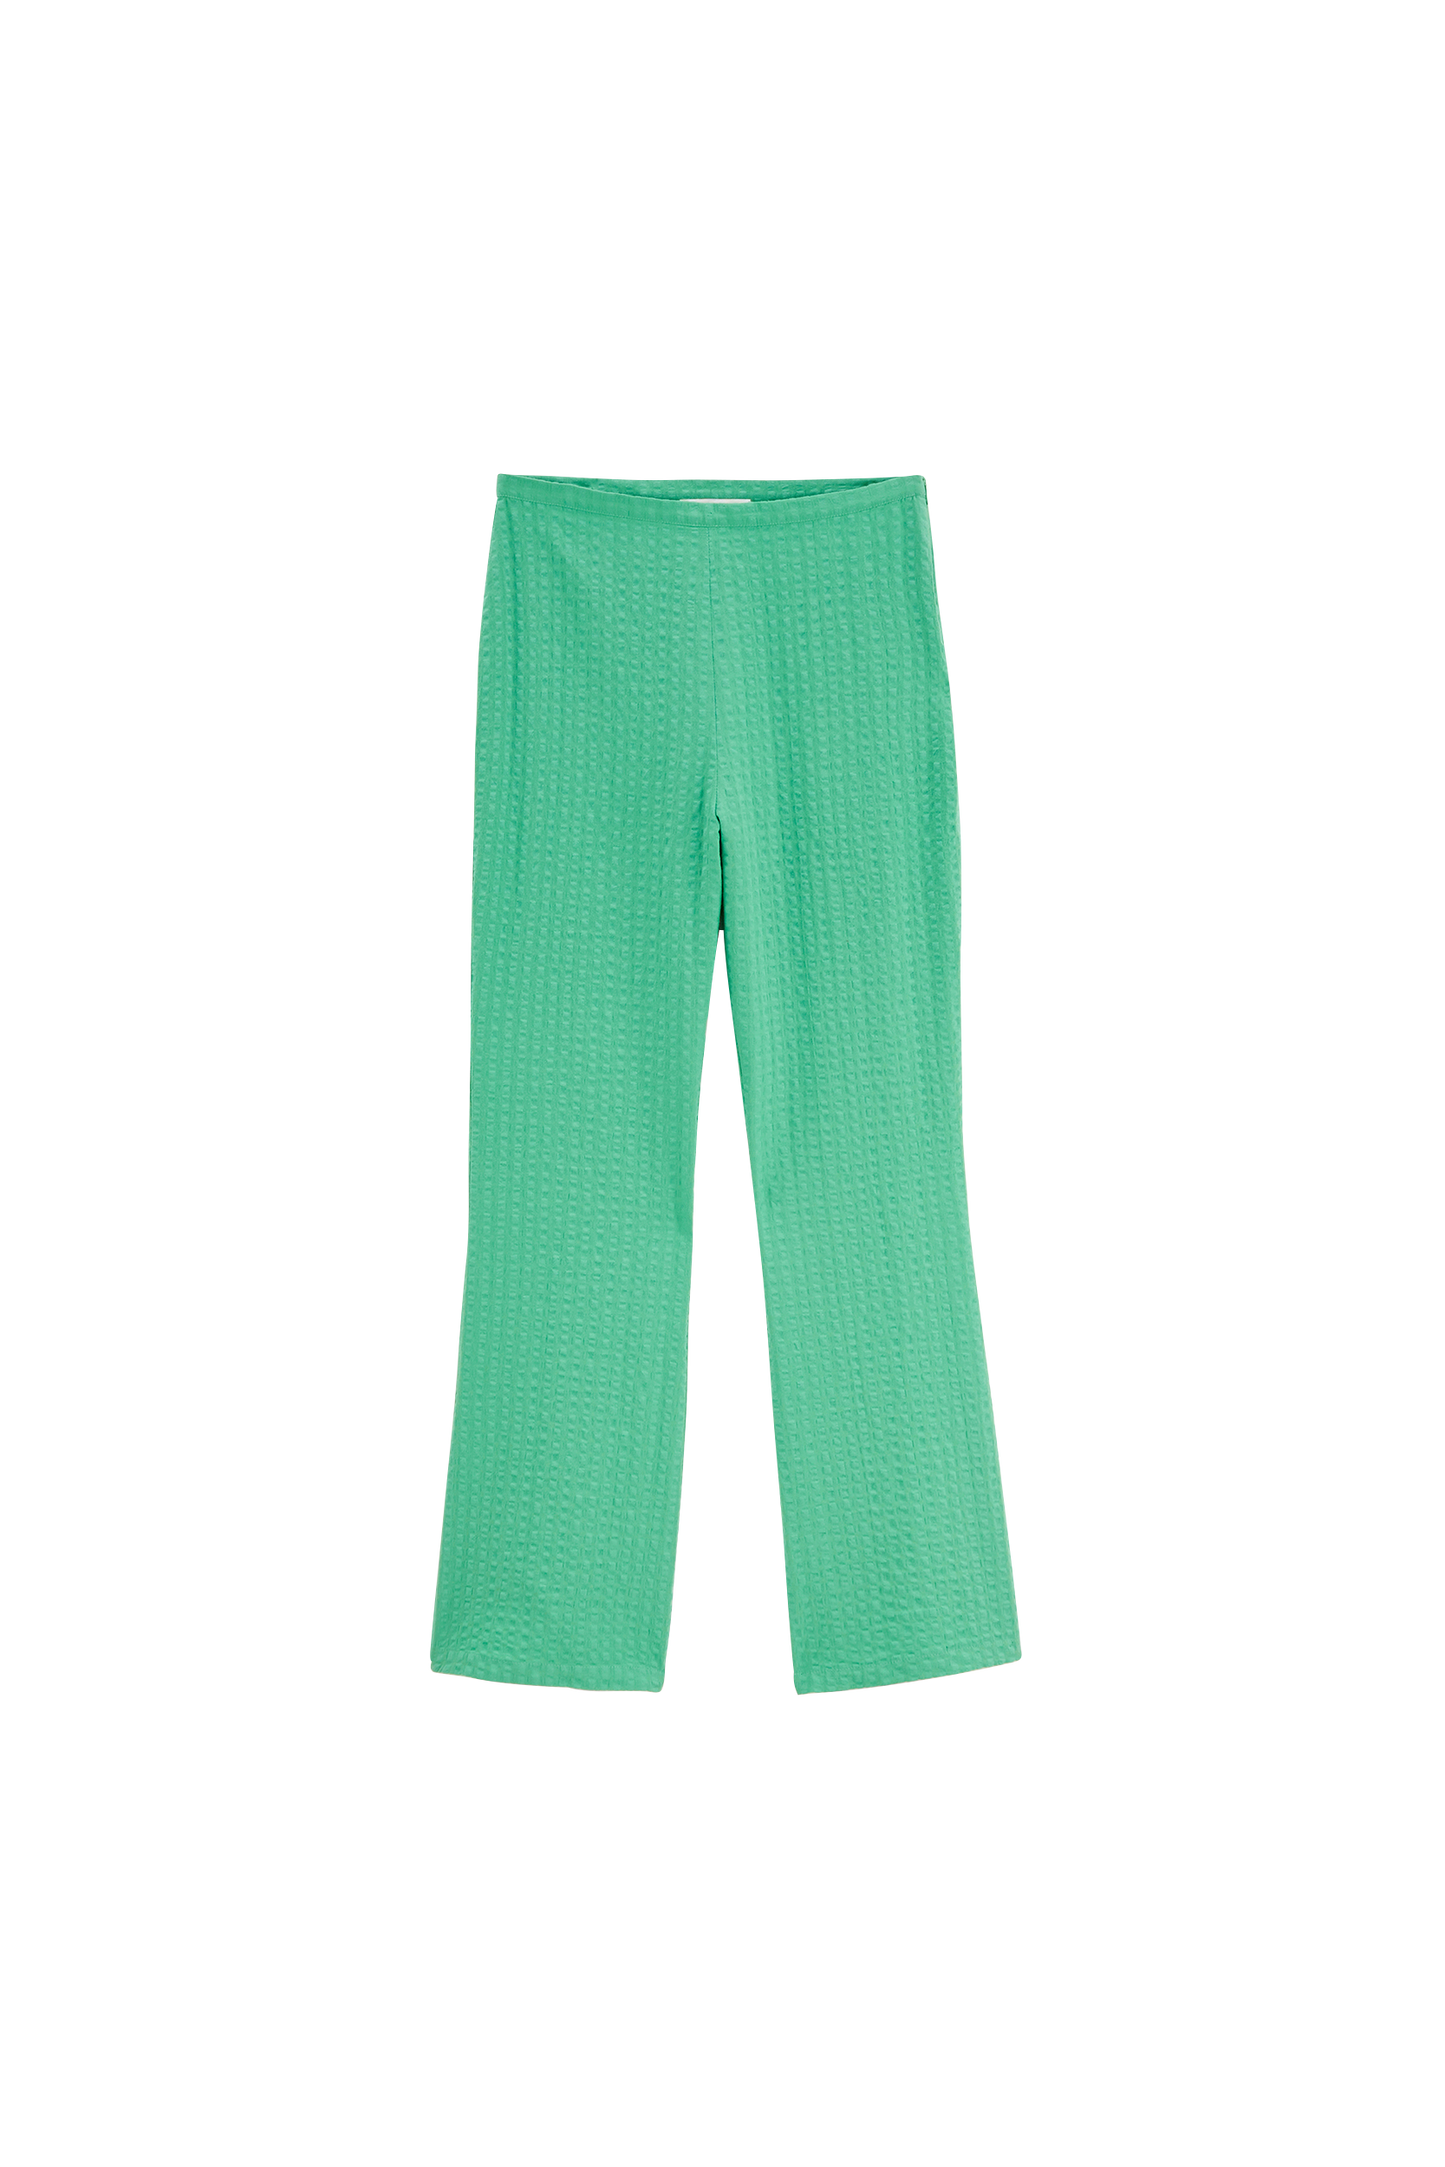 Lawn green Joel pants